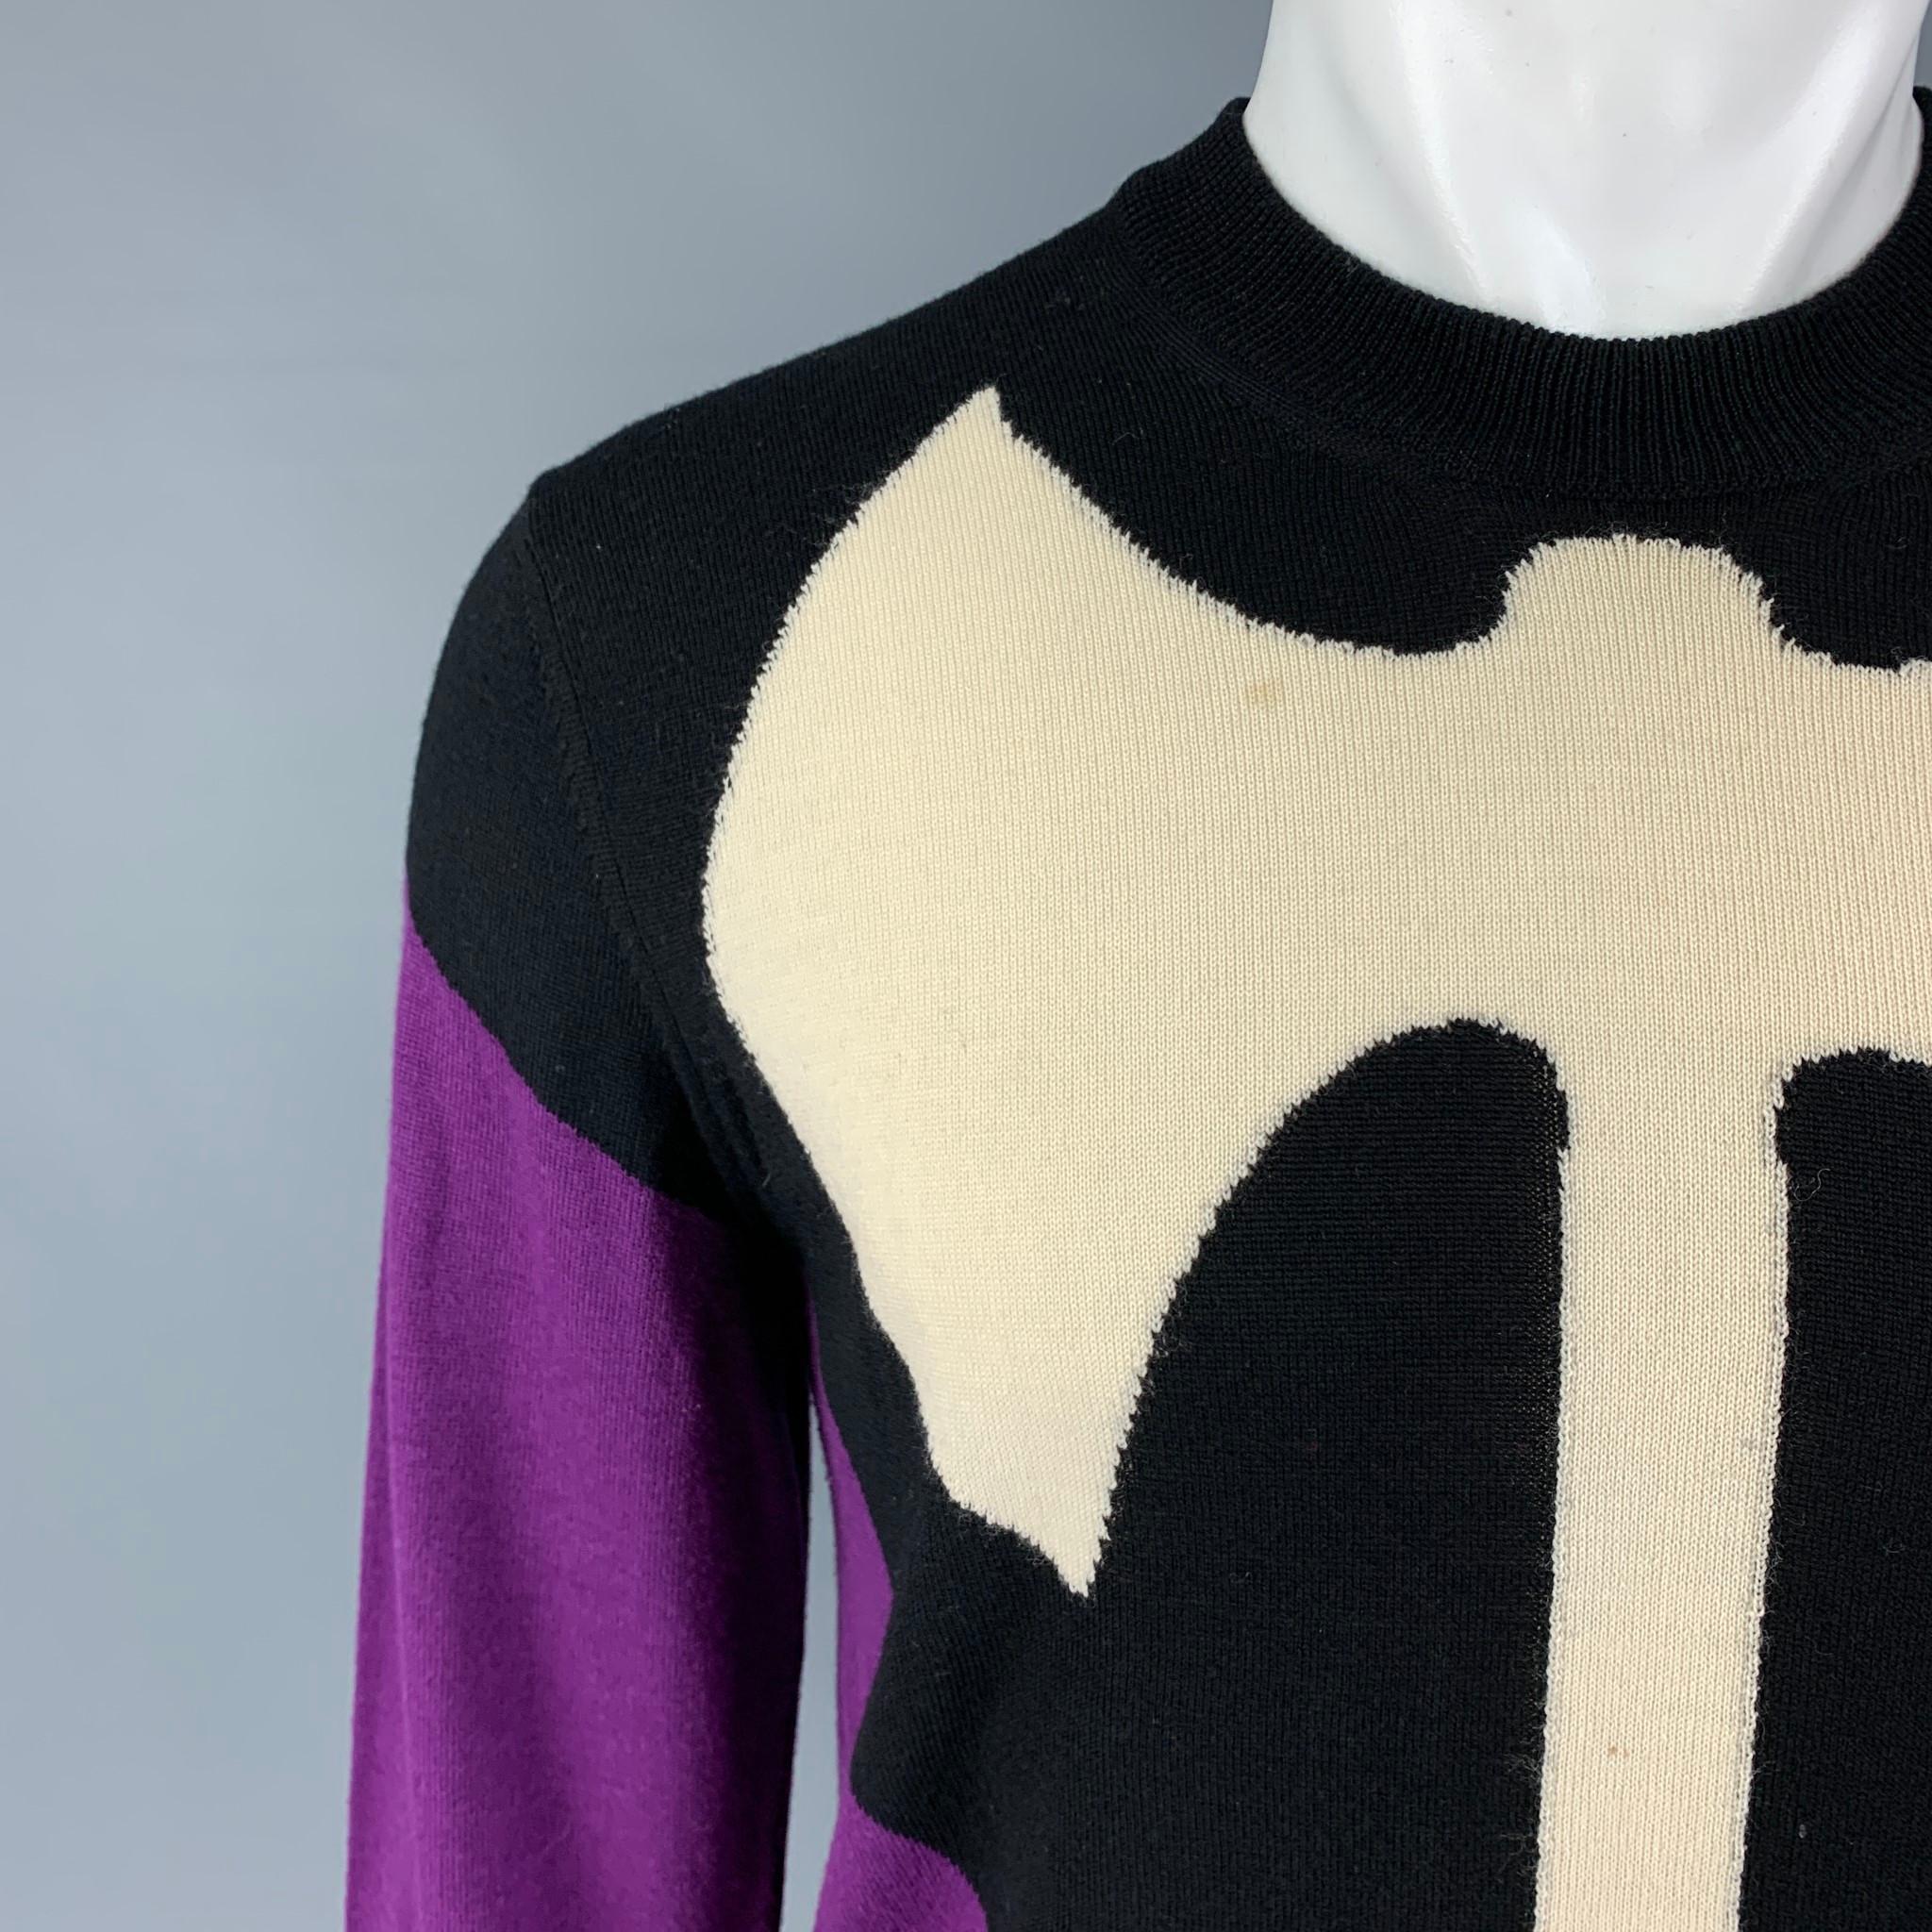 Men's VETEMENTS x COMME des GARCONS SHIRT SS17 Size M Black Purple Graphic Sweater